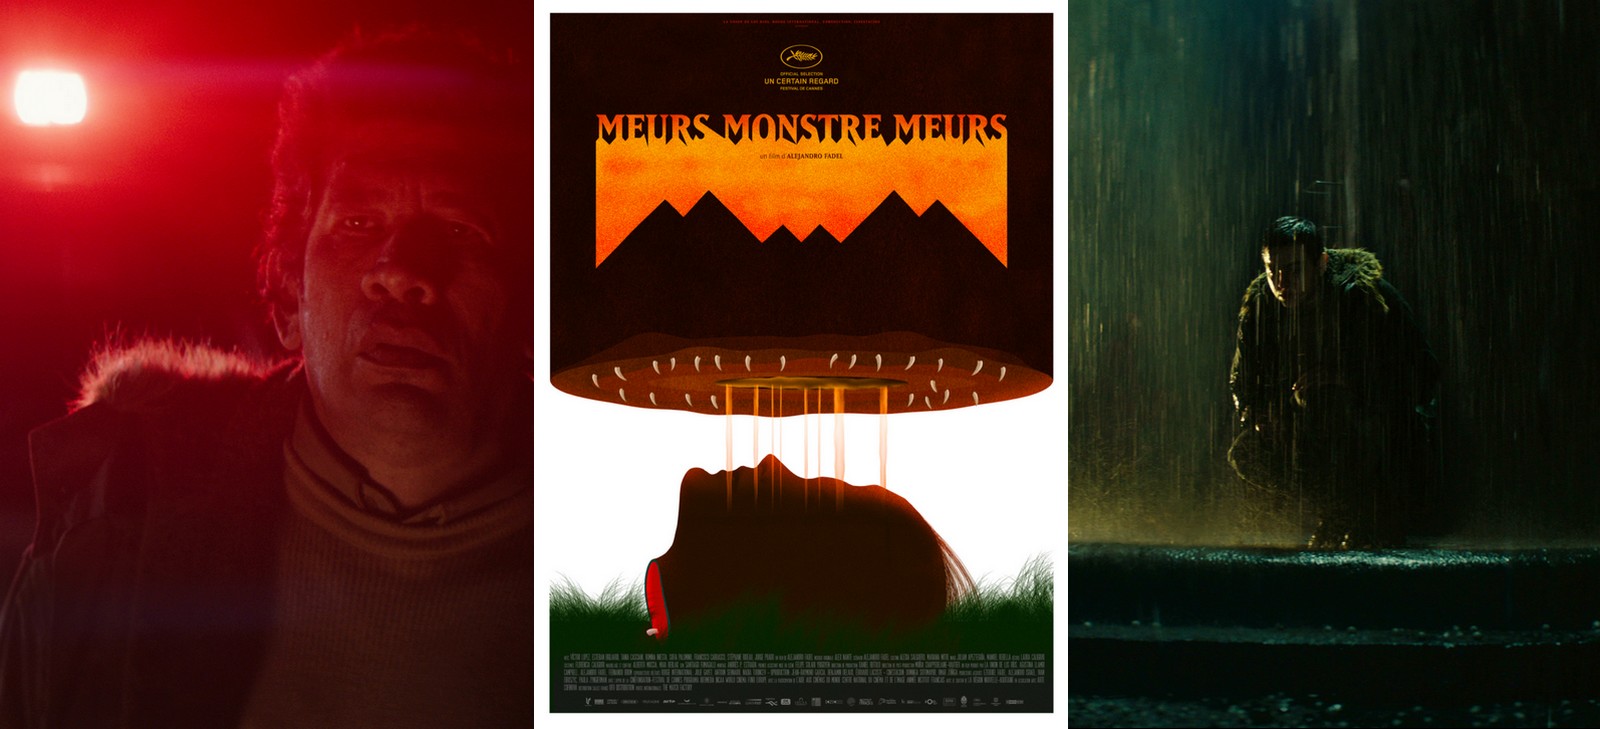 Affiche du film horrifique Meurs, monstre, meurs, du réalisateur argentin Alejandro Fadel